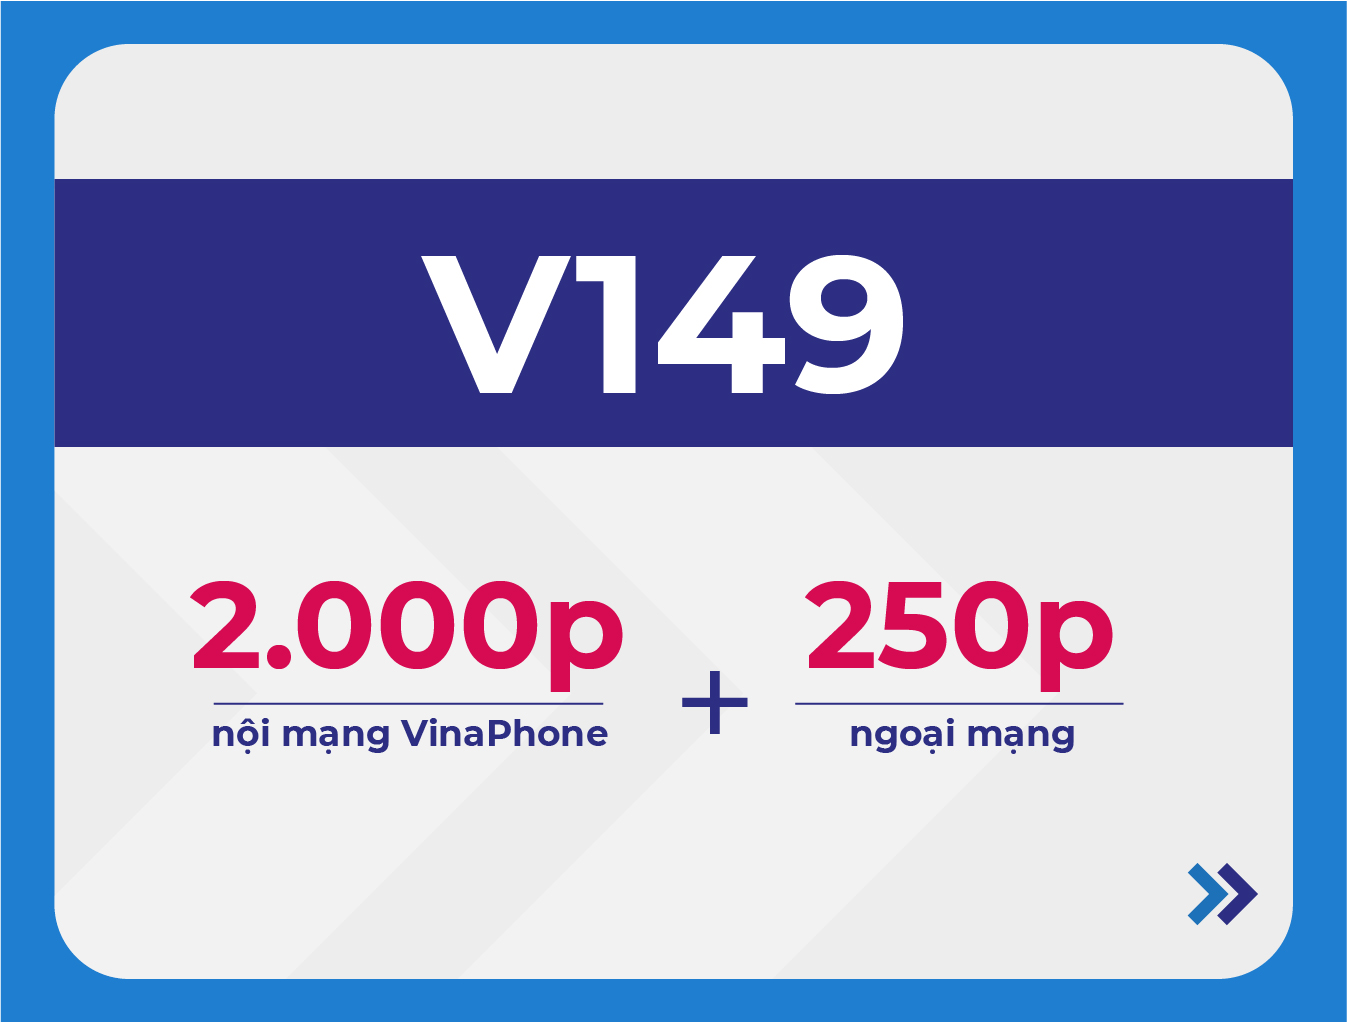 V149 VinaPhone - Gói cước ưu đãi cước thoại của VinaPhone